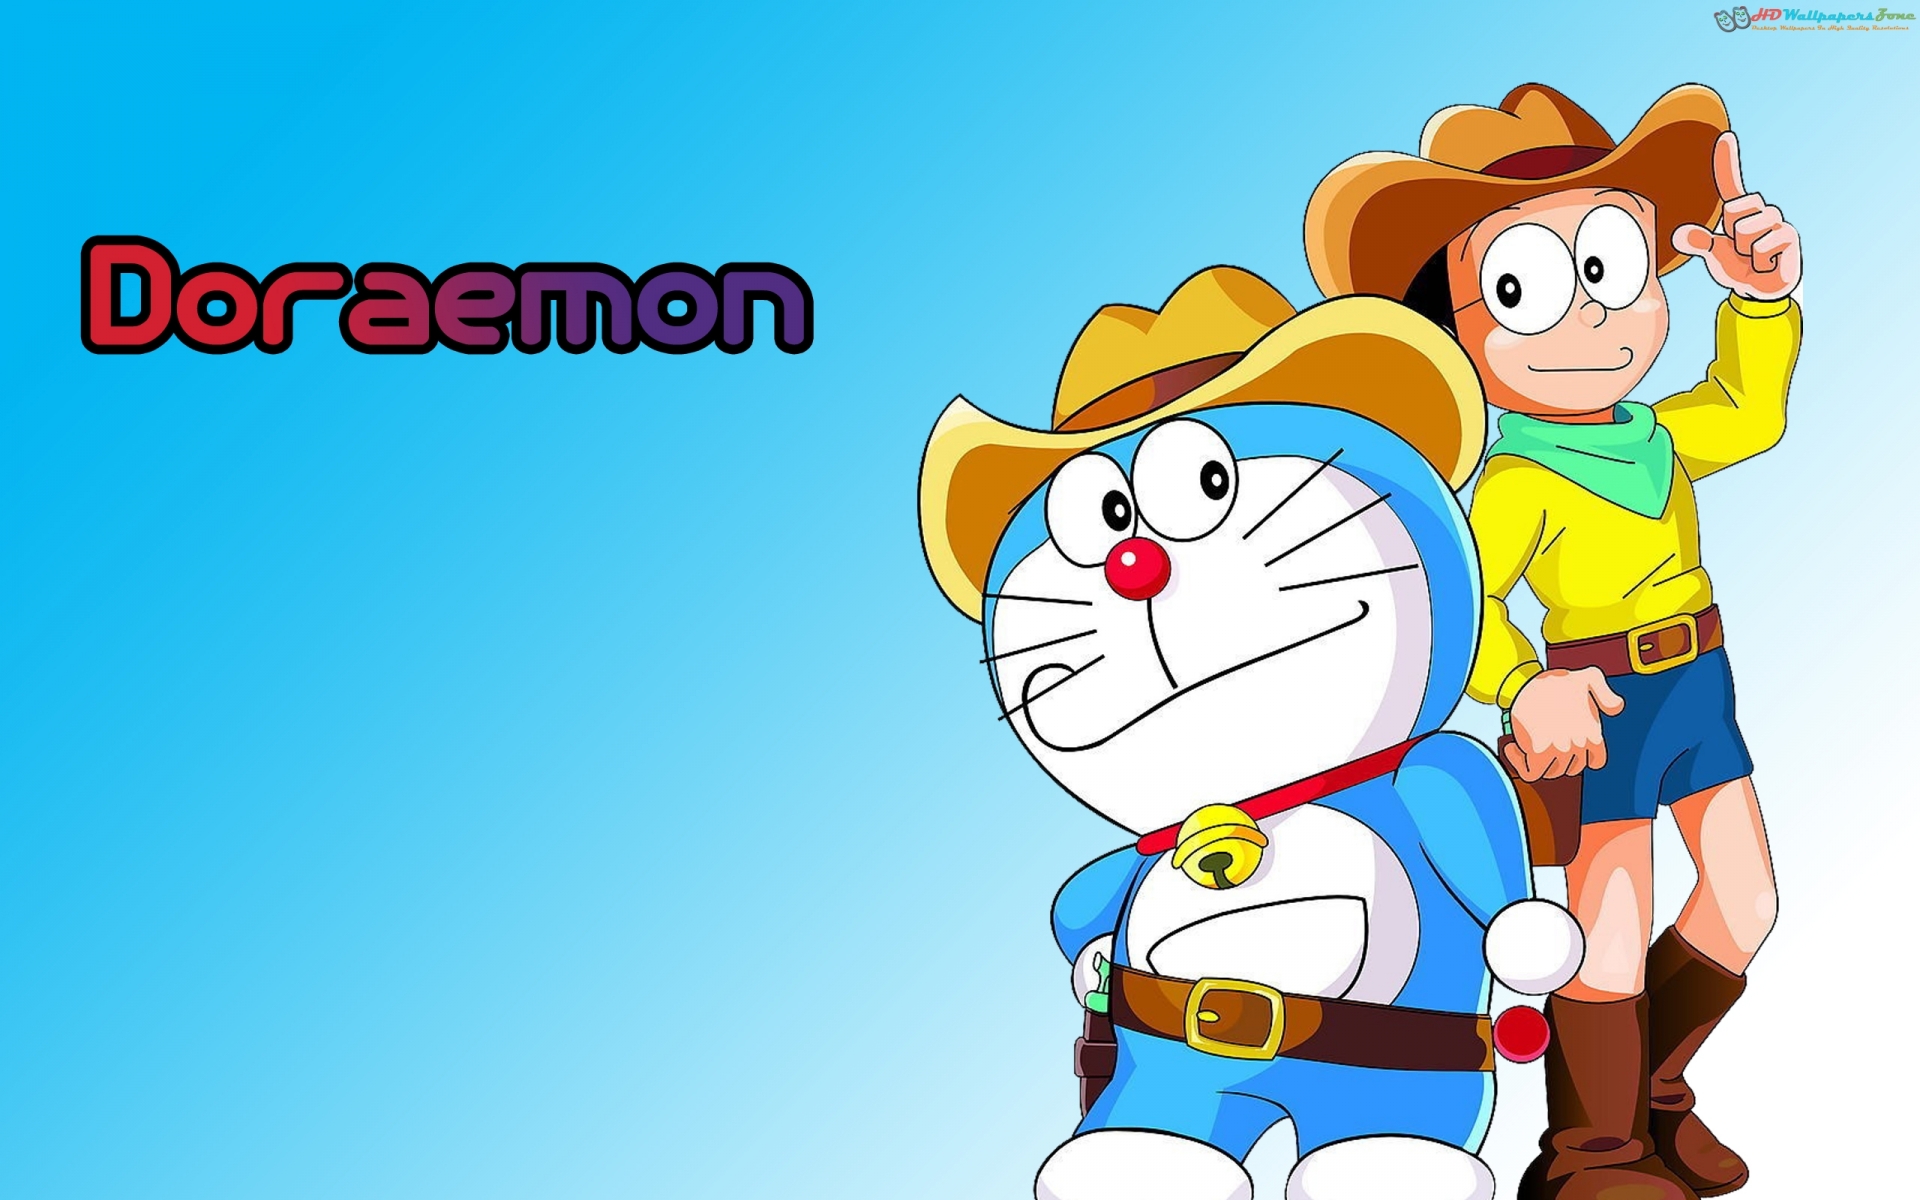 Doraemon wallpapers: Hãy cùng lắng nghe tiếng chuông thần kỳ vang lên và nhập vào thế giới thần tiên cùng Doraemon! Với những hình nền Doraemon tuyệt đẹp đầy màu sắc, bạn sẽ trở thành người bạn đồng hành đáng tin cậy của Nobita và cùng nhau trải qua những câu chuyện đầy phiêu lưu.